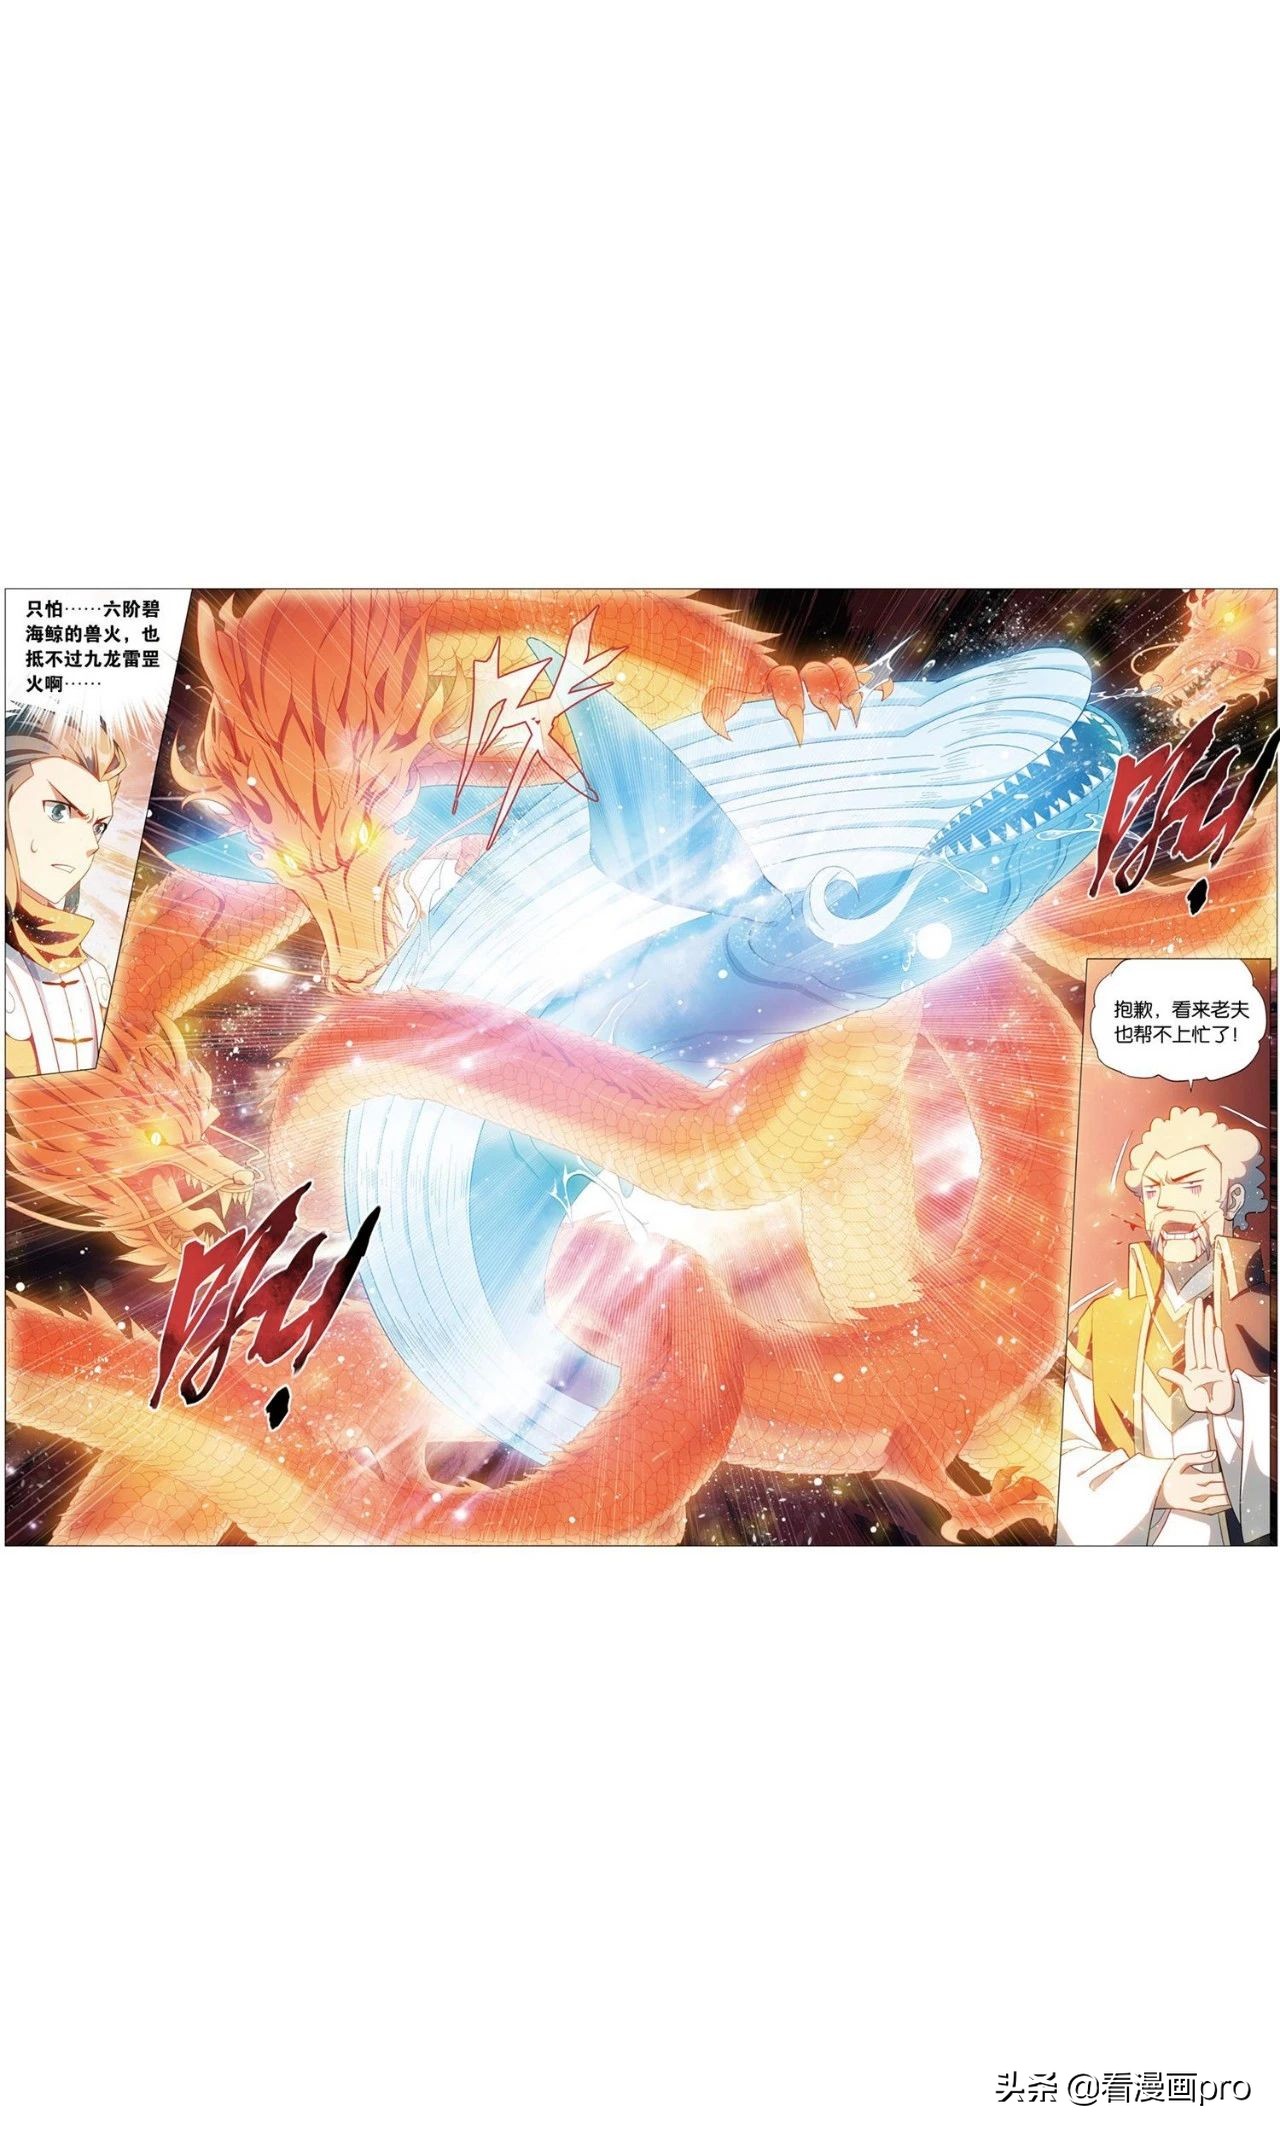 九龙雷罡火的威力！斗破苍穹漫画第730-732话焚炎谷